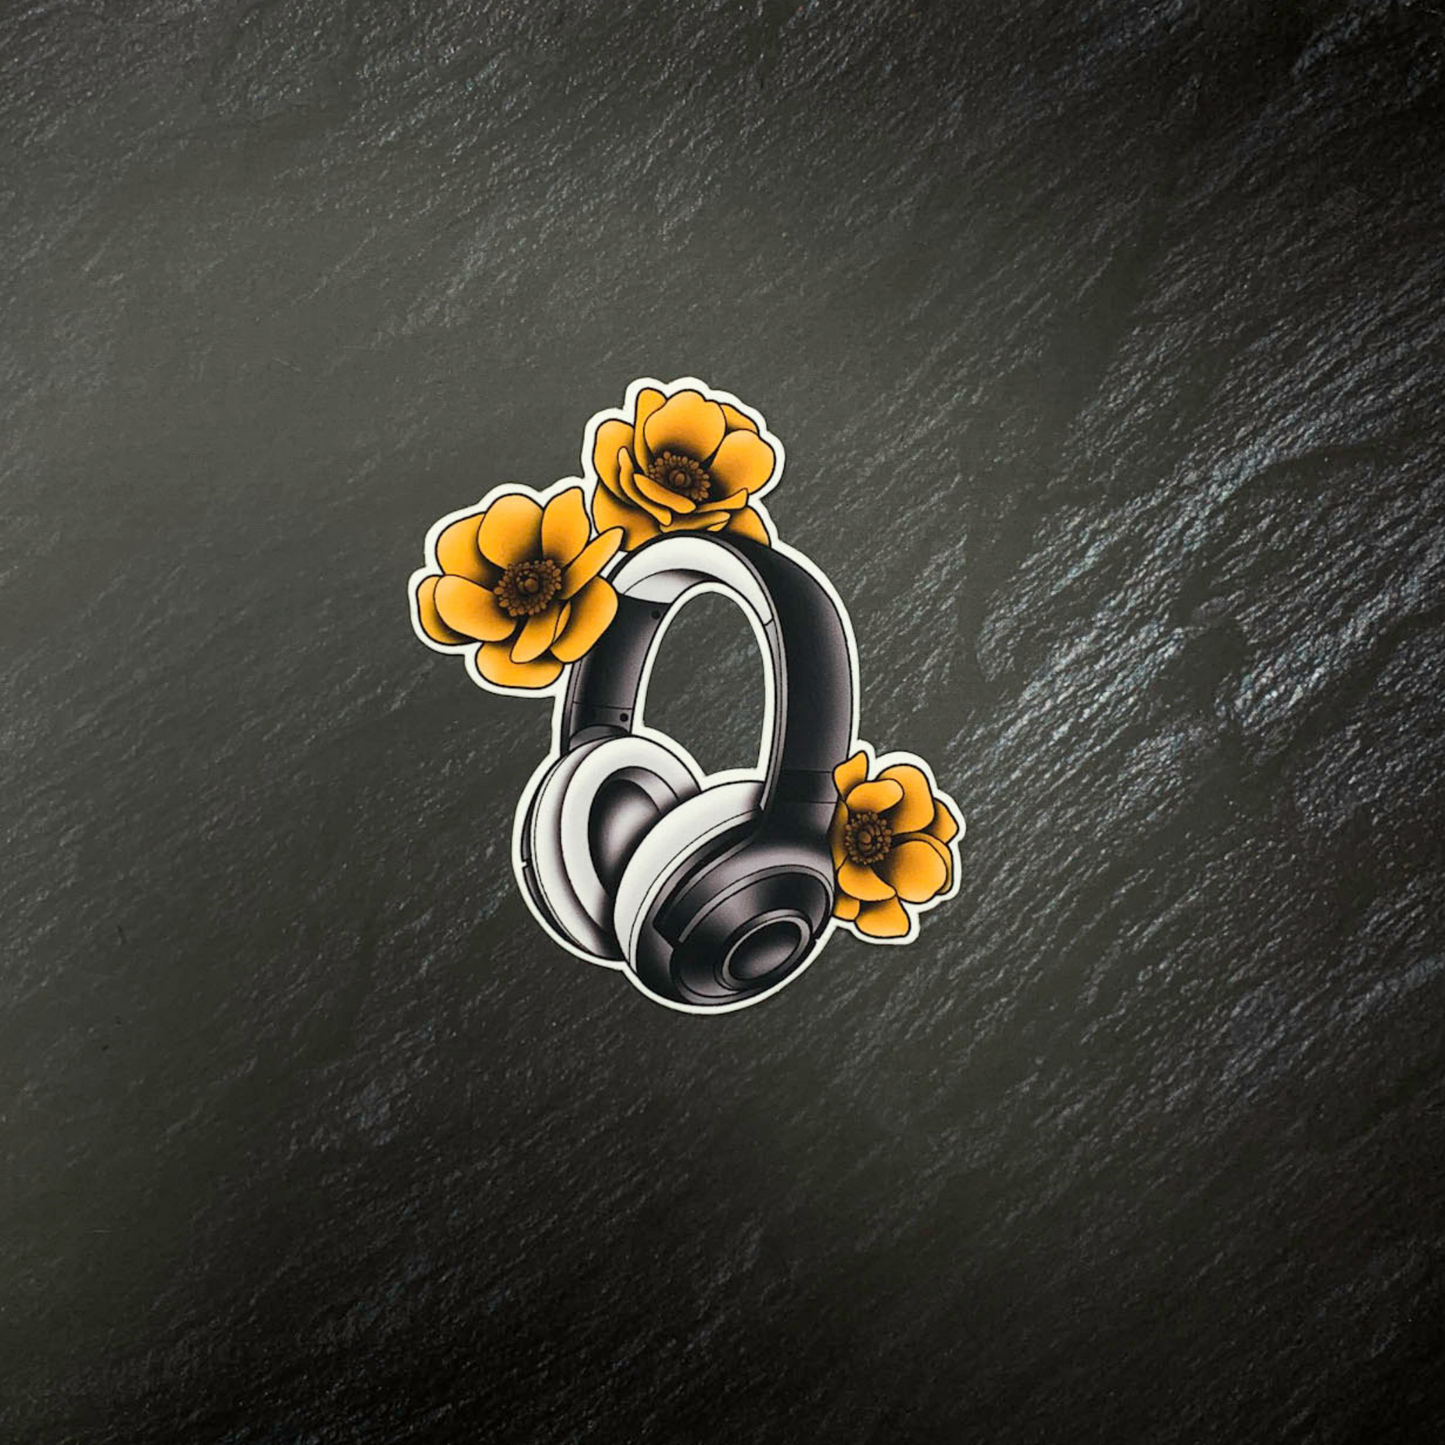 Headset Flower Power - Black